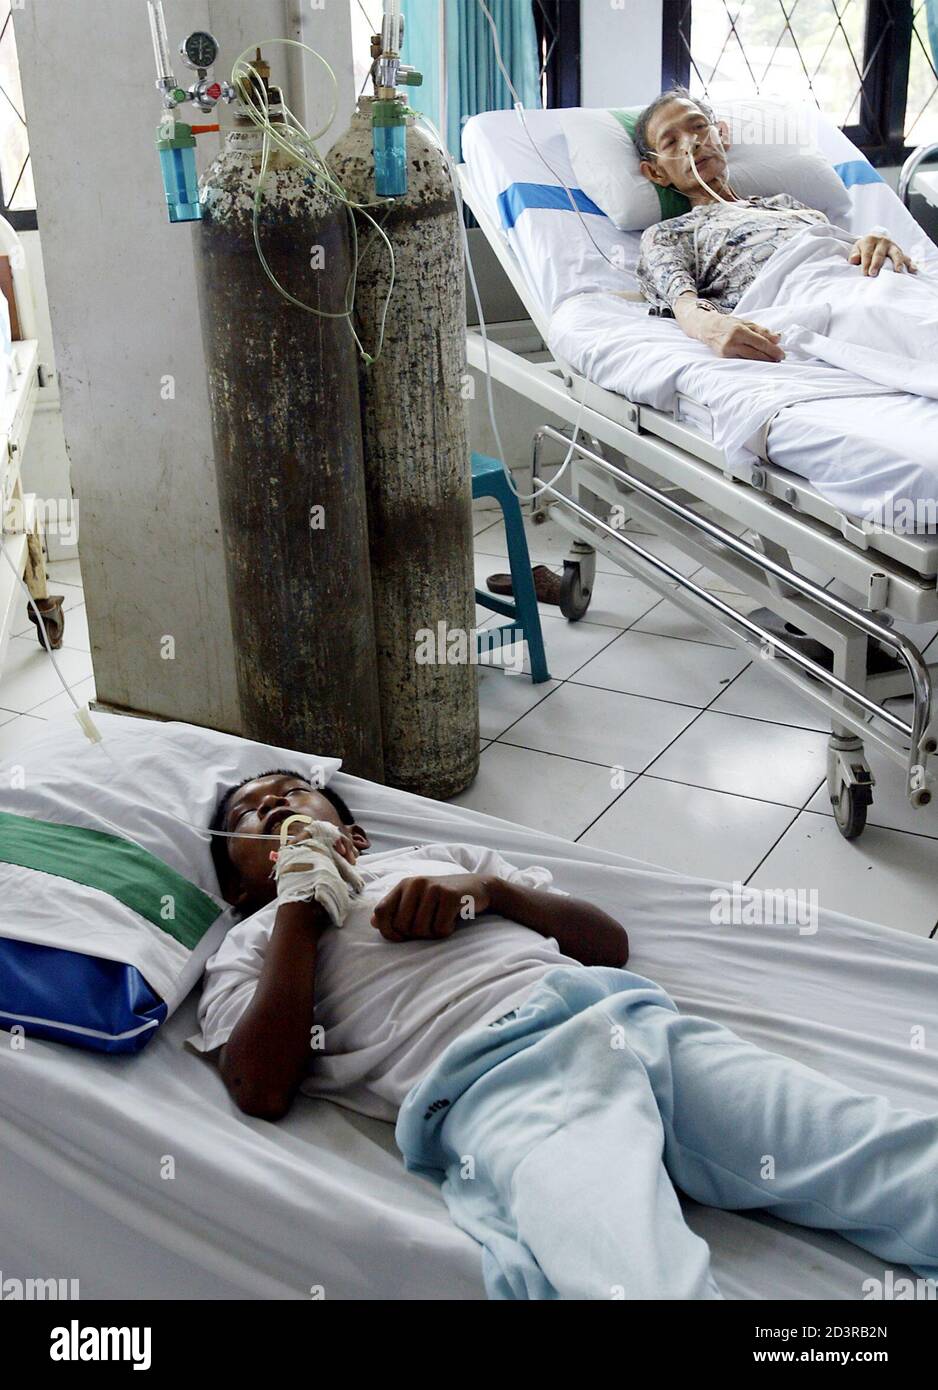 Gli indonesiani ricevono un trattamento per la febbre dengue nei corridoi di un ospedale governativo sovraffollato di pazienti affetti dalla malattia a Giacarta il 2 marzo 2004. Più di 300 persone sono morte e altre migliaia si sono ammalate a causa dell'epidemia che ha colpito l'Indonesia dall'inizio di quest'anno. REUTERS/BEAWIHARA EN/SH Foto Stock